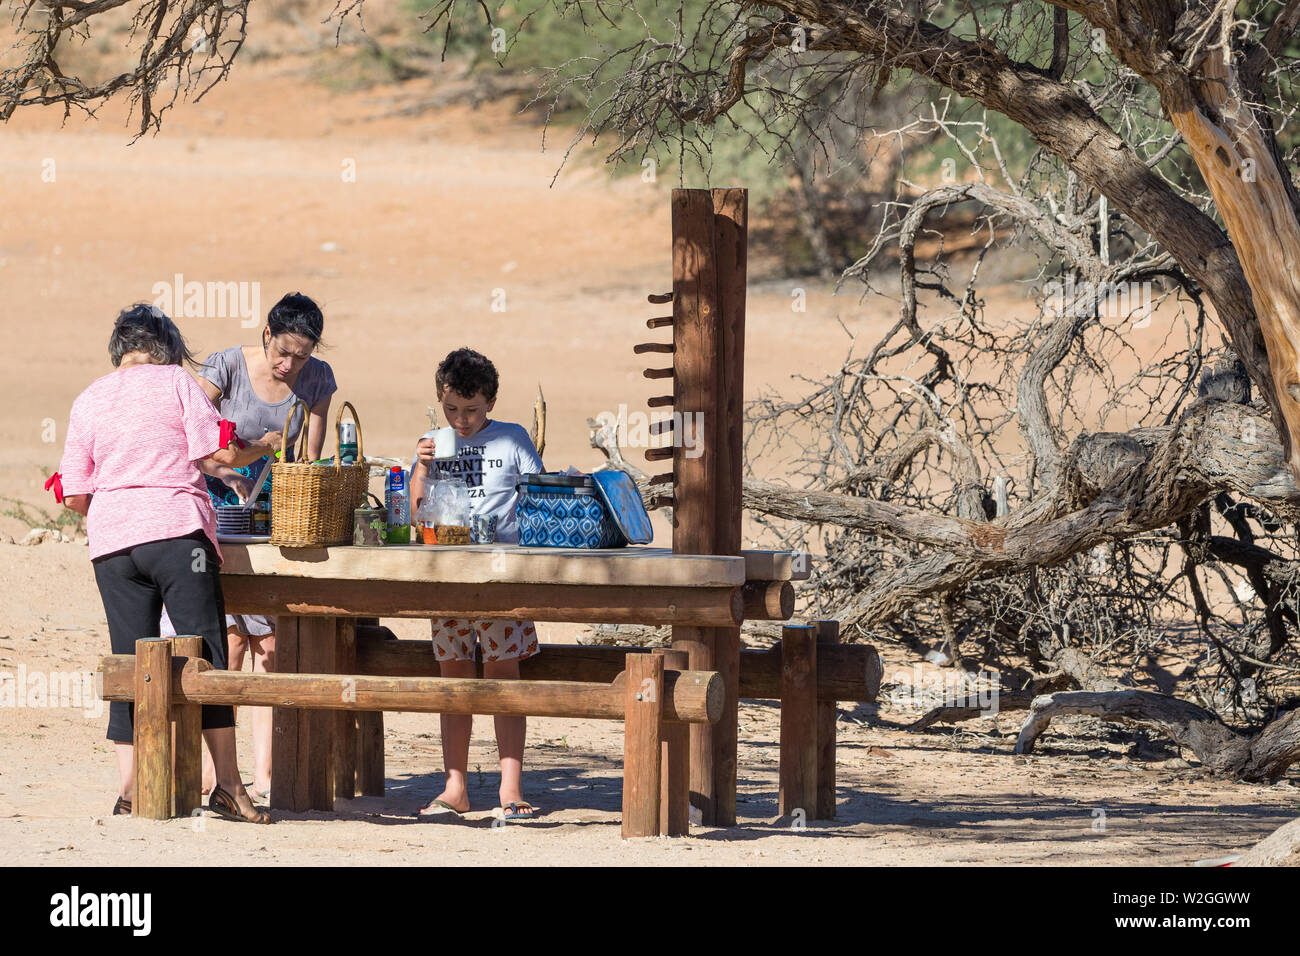 Grupo familiar en un banco de madera tabla preparando una comida en un picnic o sitio de descanso en el medio del desierto el Parque Transfronterizo Kgalagadi, Sudáfrica Foto de stock